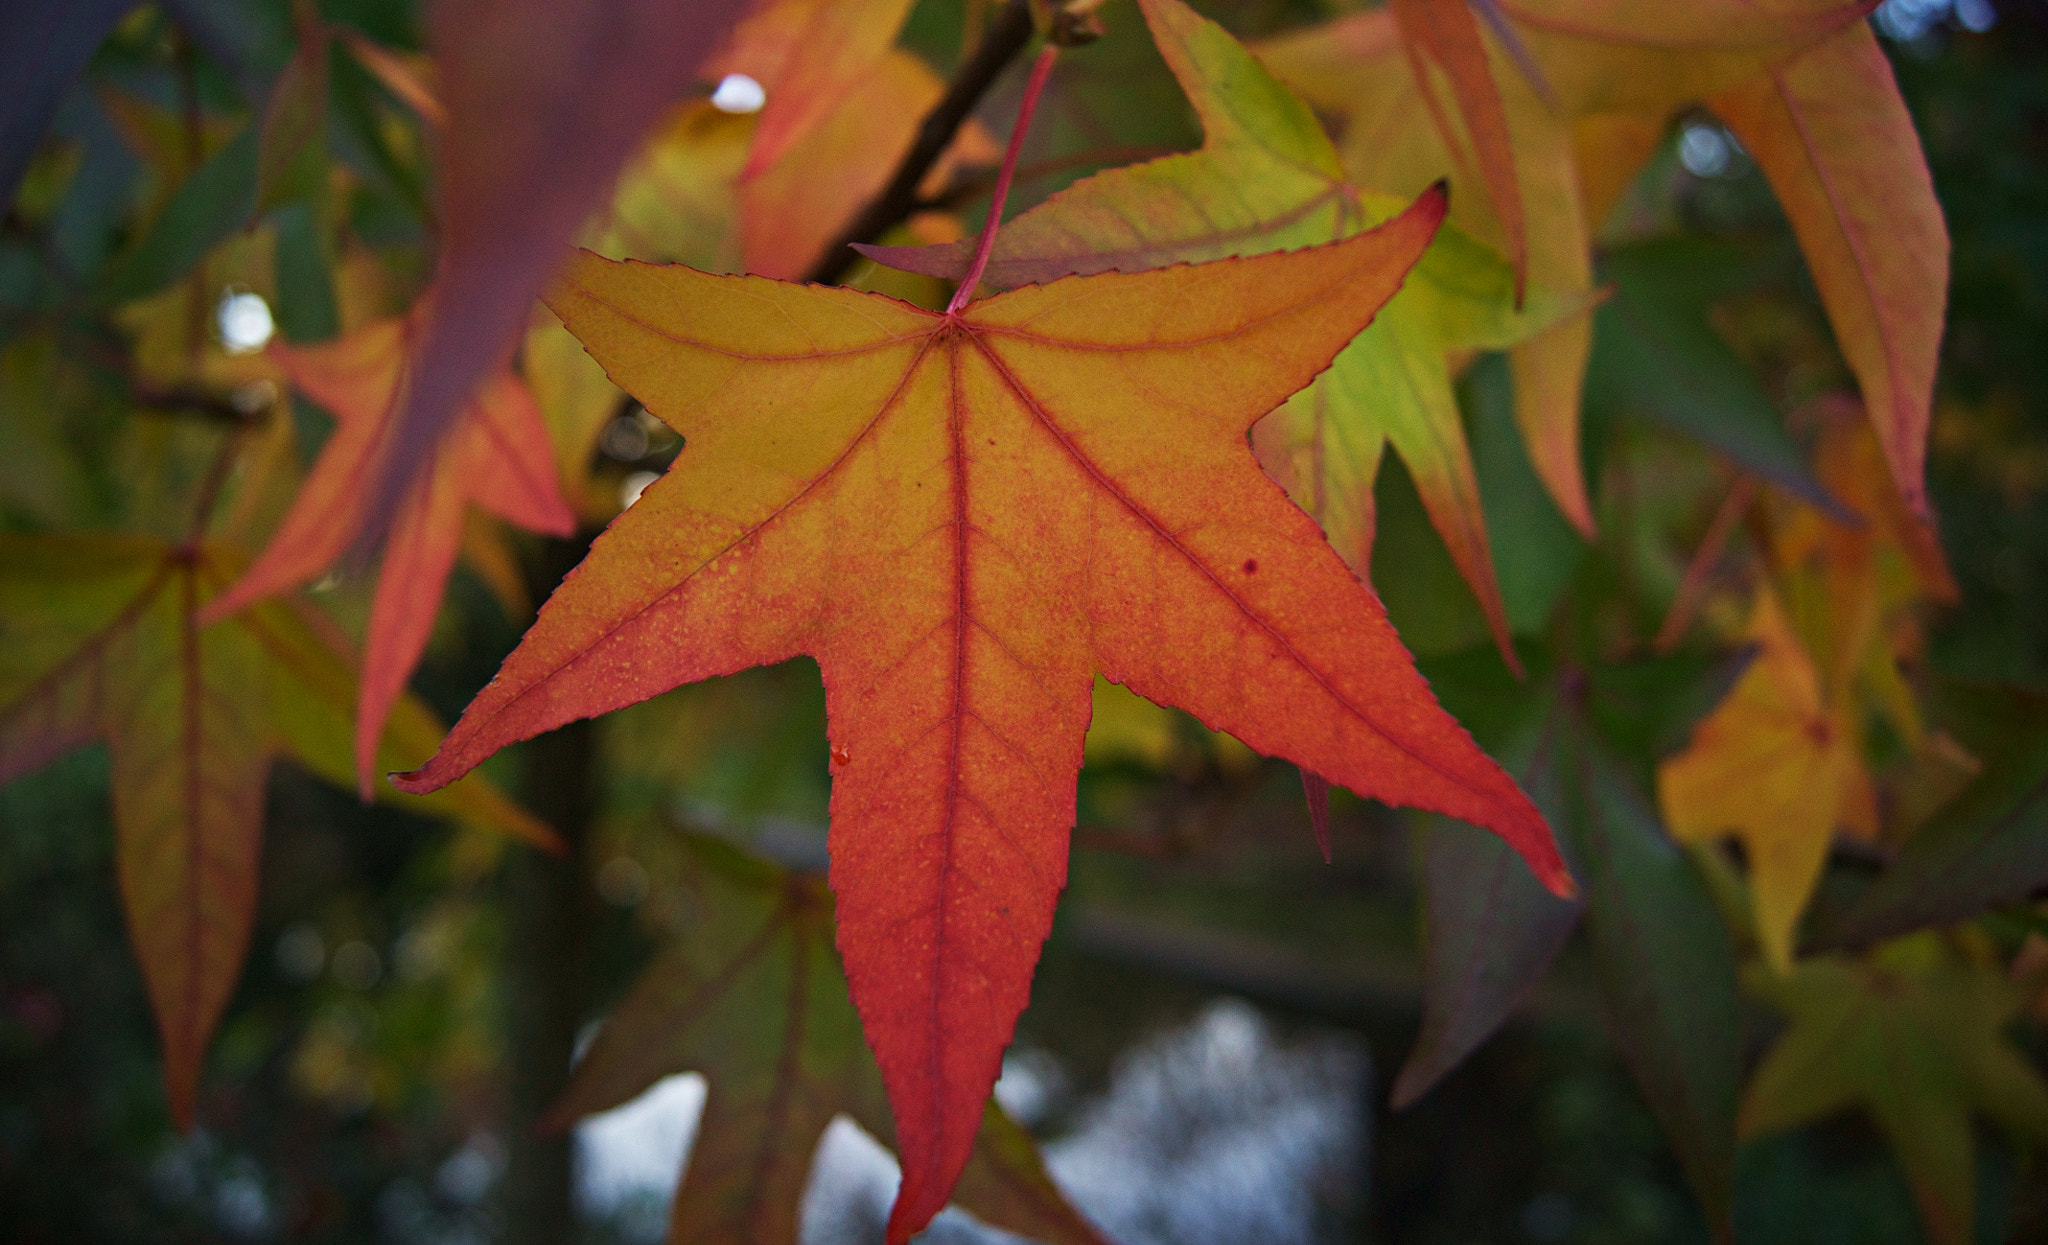 Sony Alpha DSLR-A500 sample photo. Autumn leaf photography